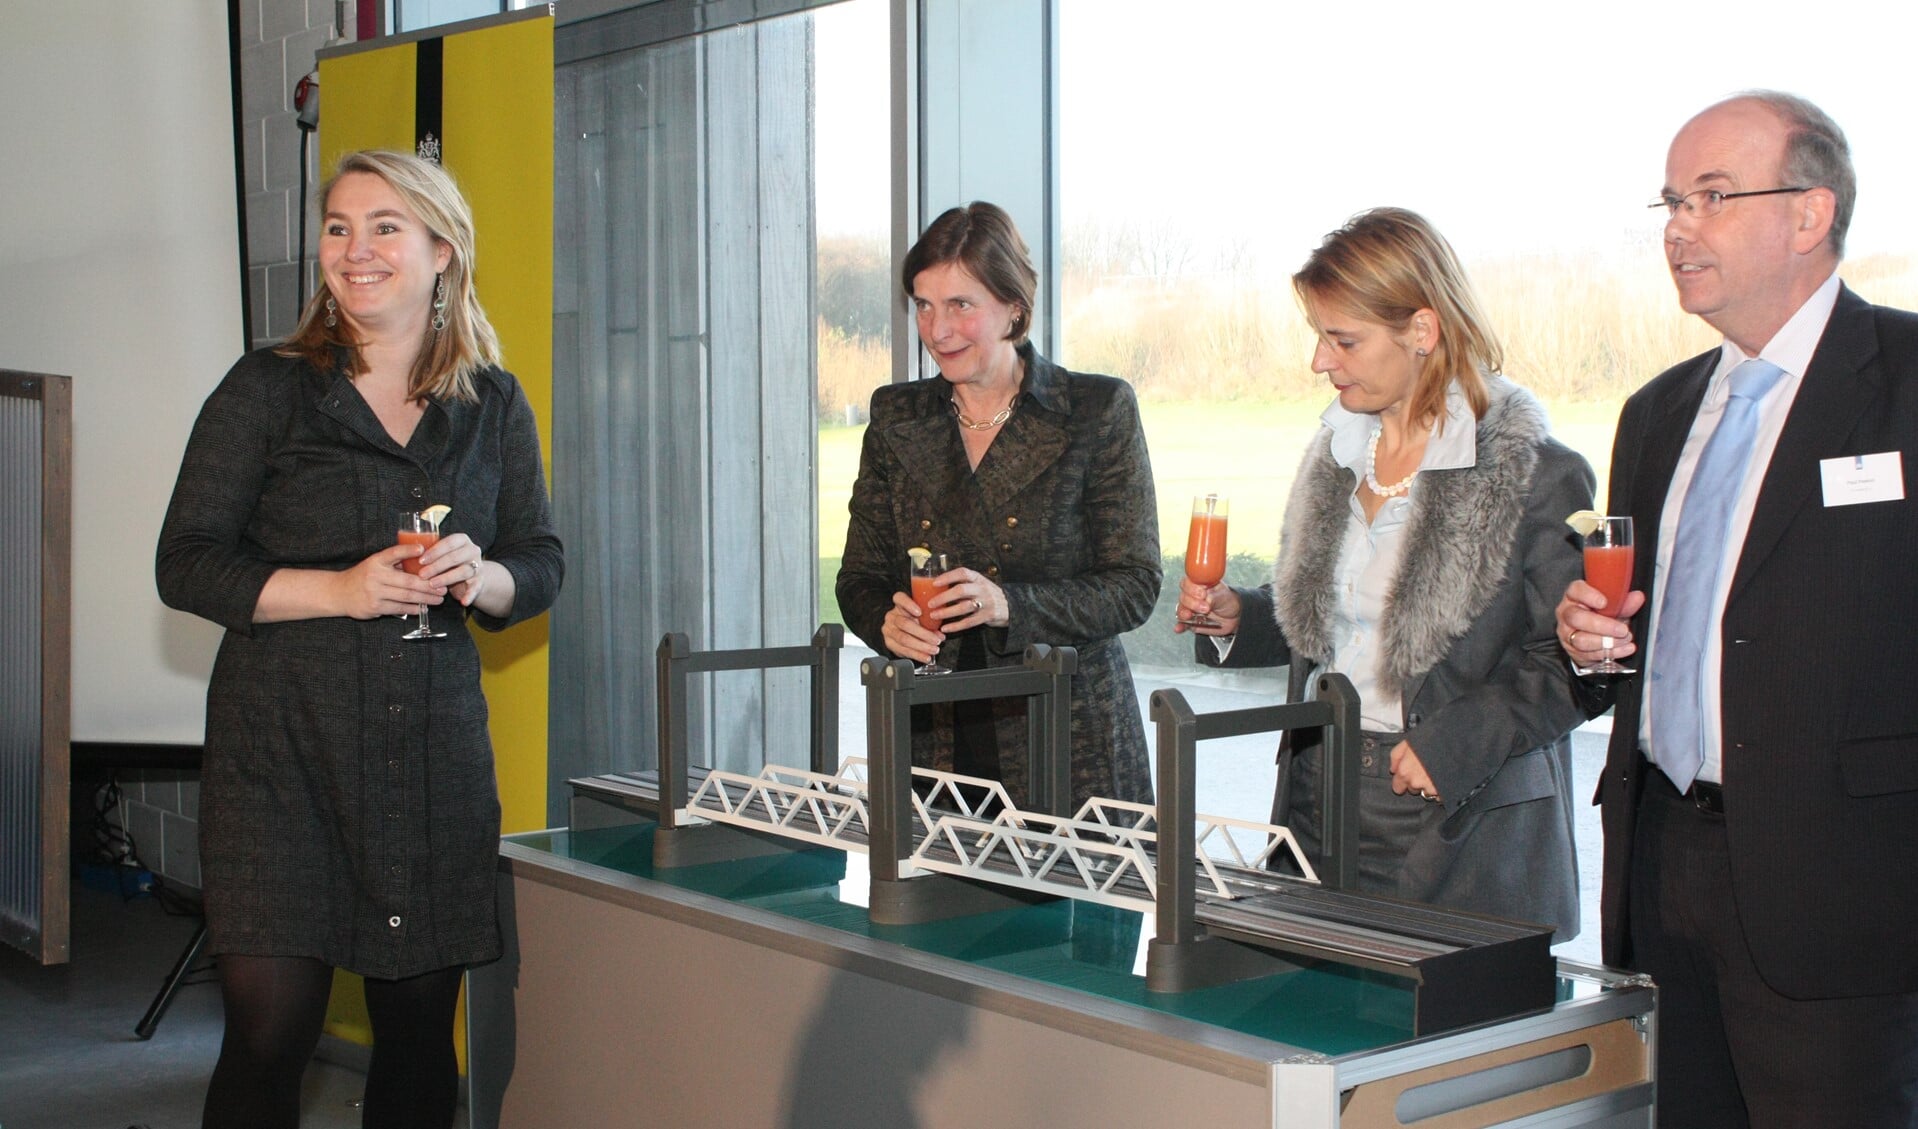 In december 2011 gaf de minister het startsein voor de bouw van de nieuwe Botlekbrug. Archieffoto Jan Koopmans.